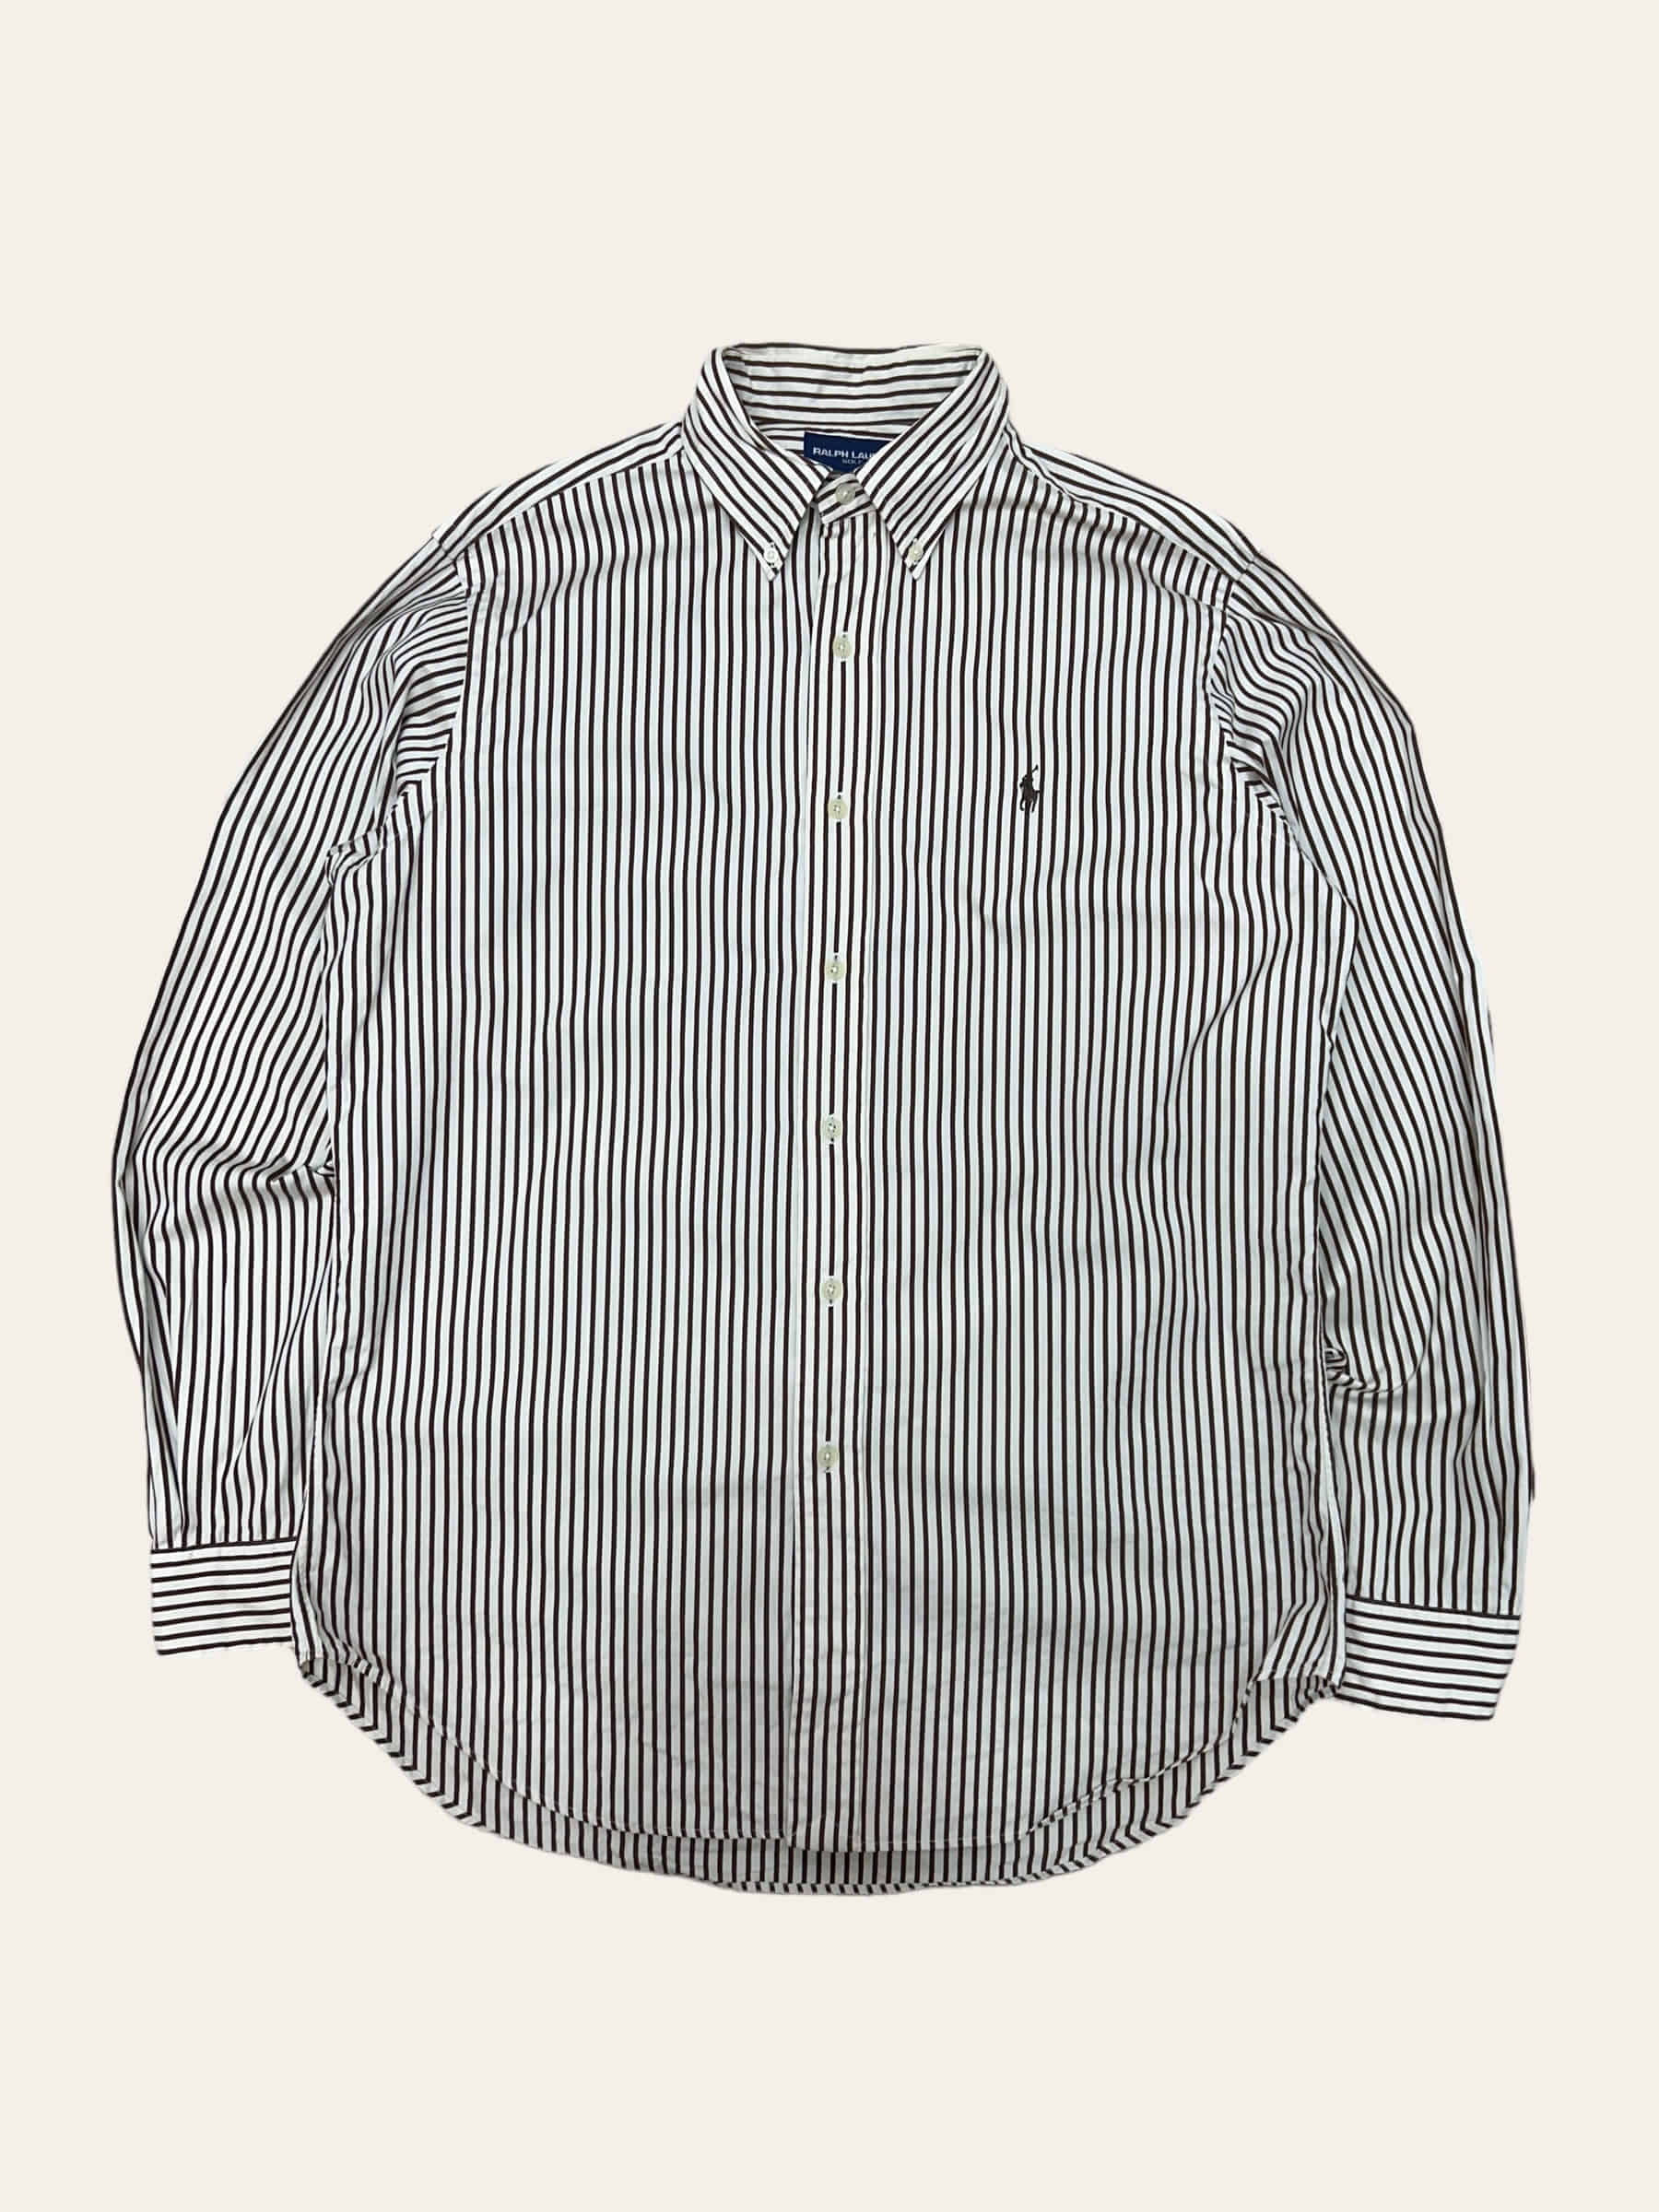 (From USA)Polo ralph lauren golf brown stripe shirt M